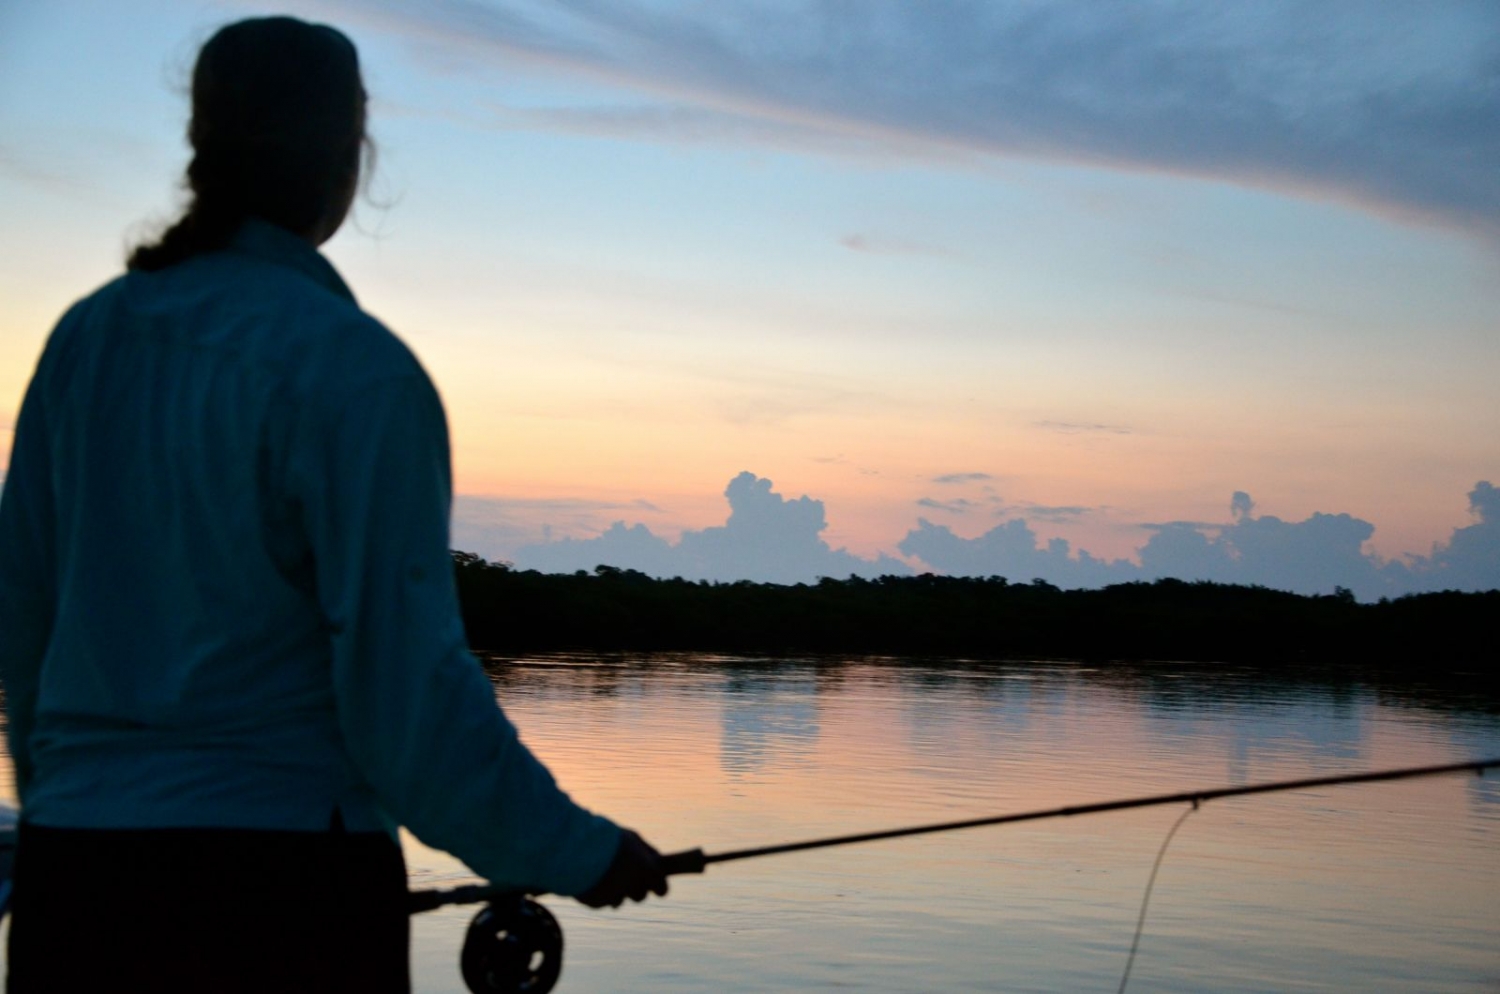 Florida Keys tarpon-bonefish-permit fishing – Your Florida Keys